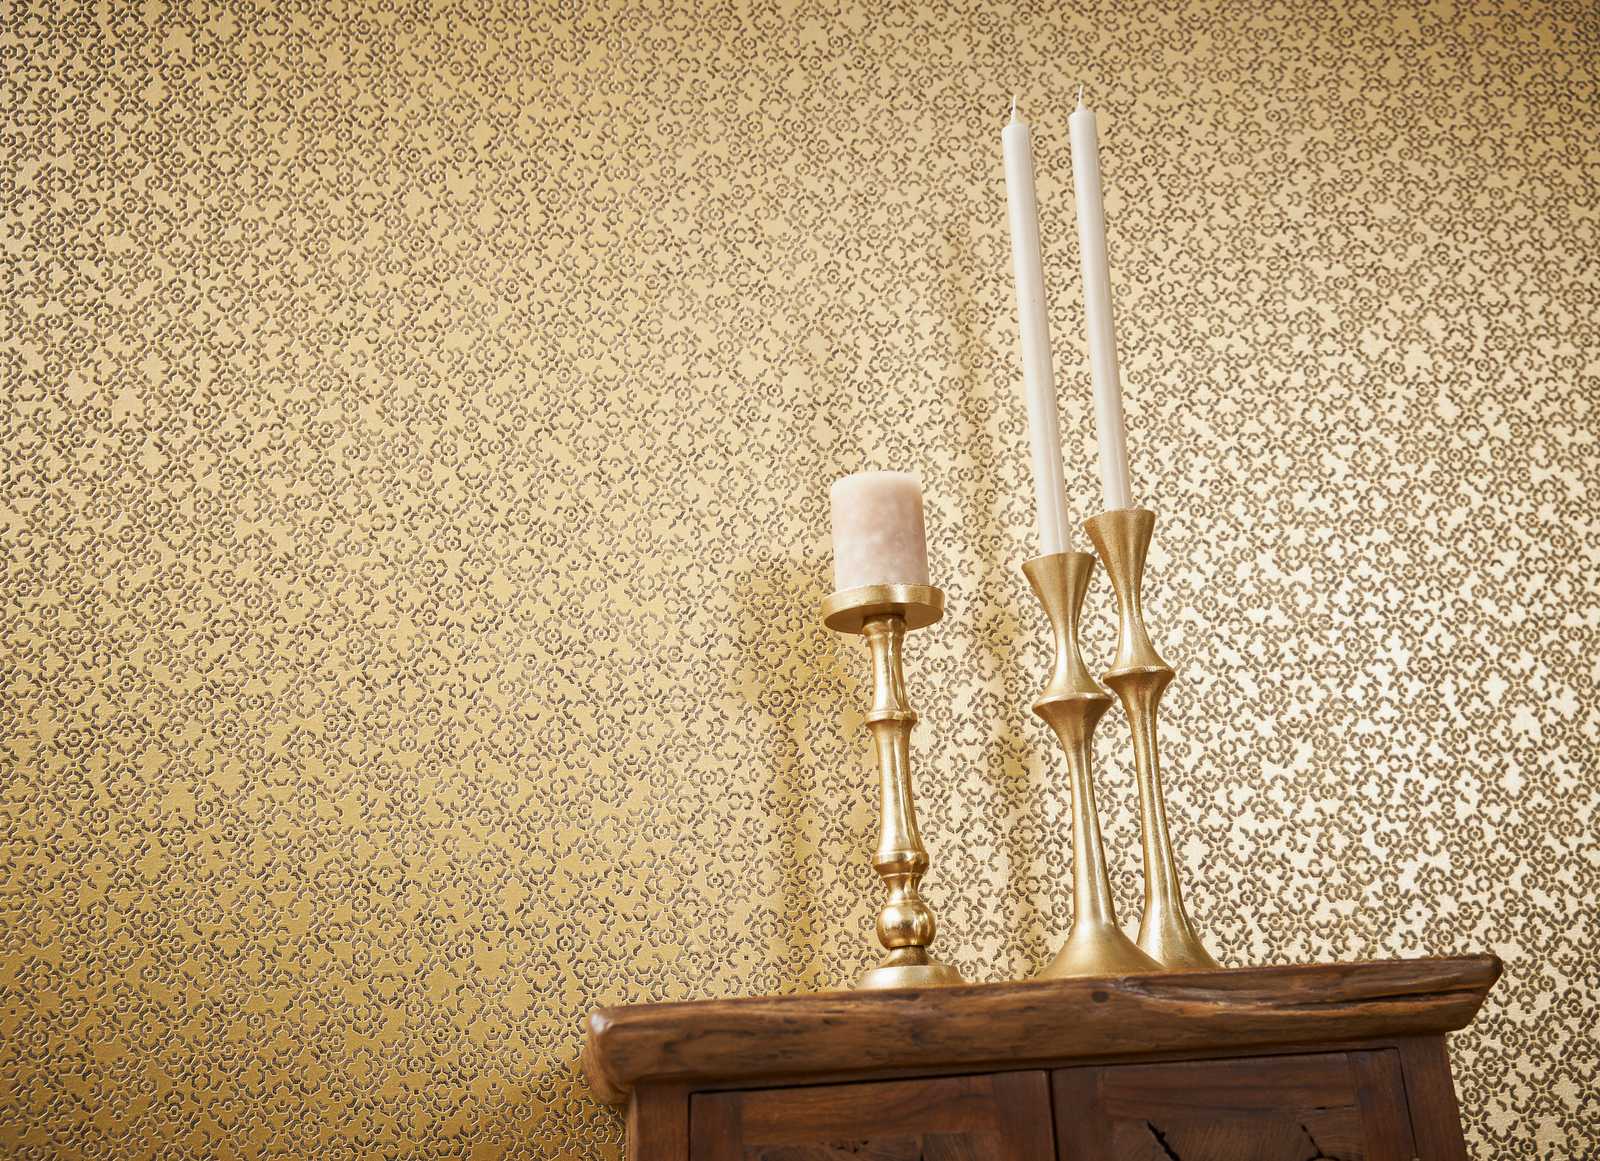             Papier peint doré à motifs avec effet 3D & éclat métallique - marron, jaune, métallique
        